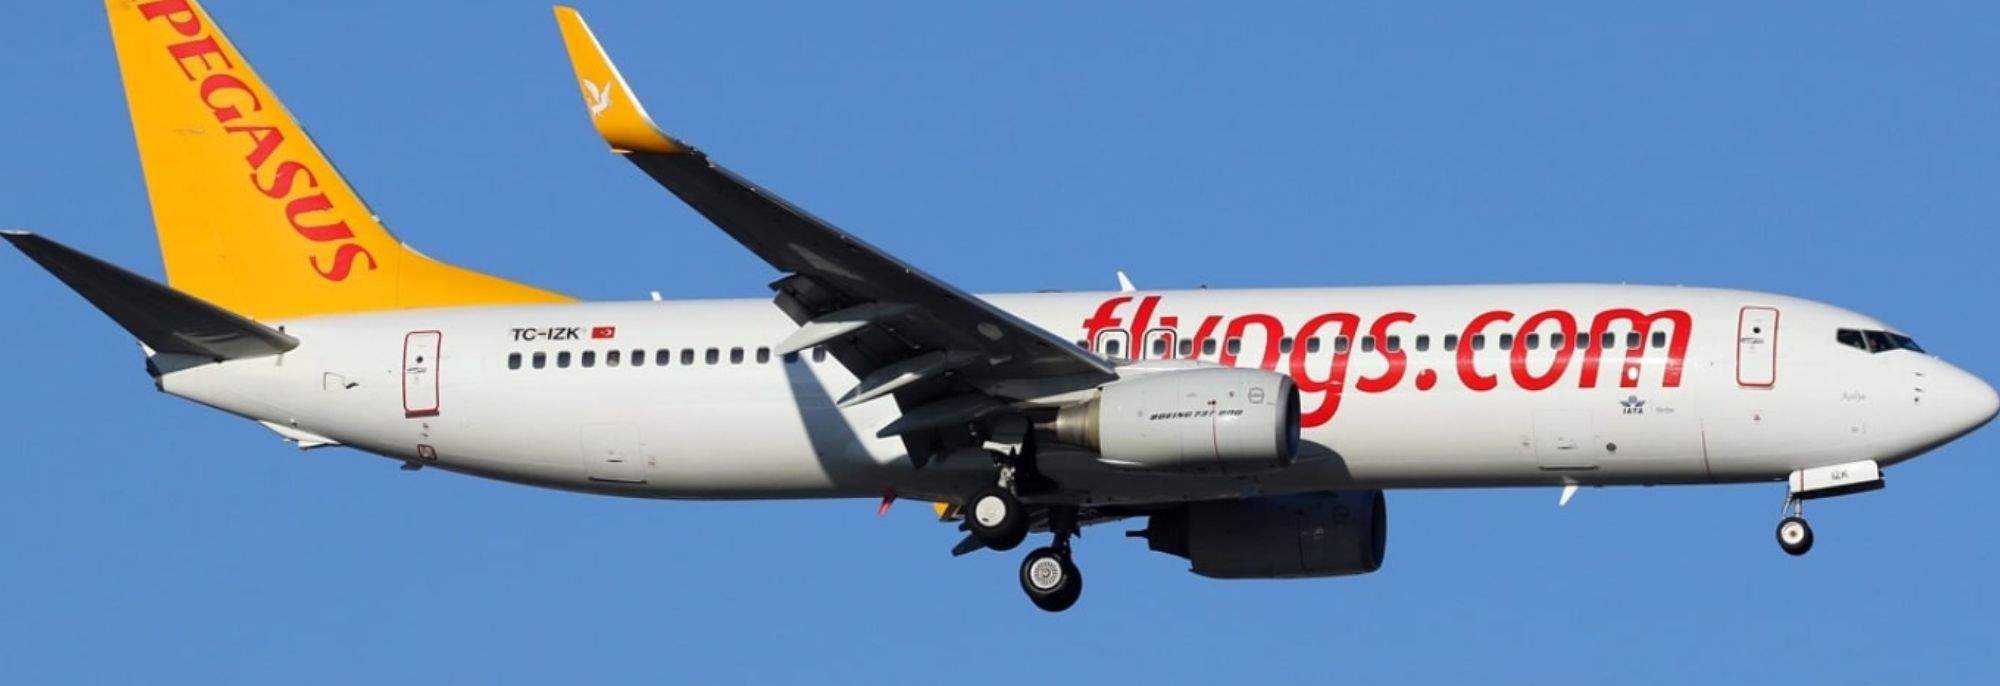 Connexion Turquie-Pologne : Pegasus Airlines atterrit à l'aéroport de Cracovie